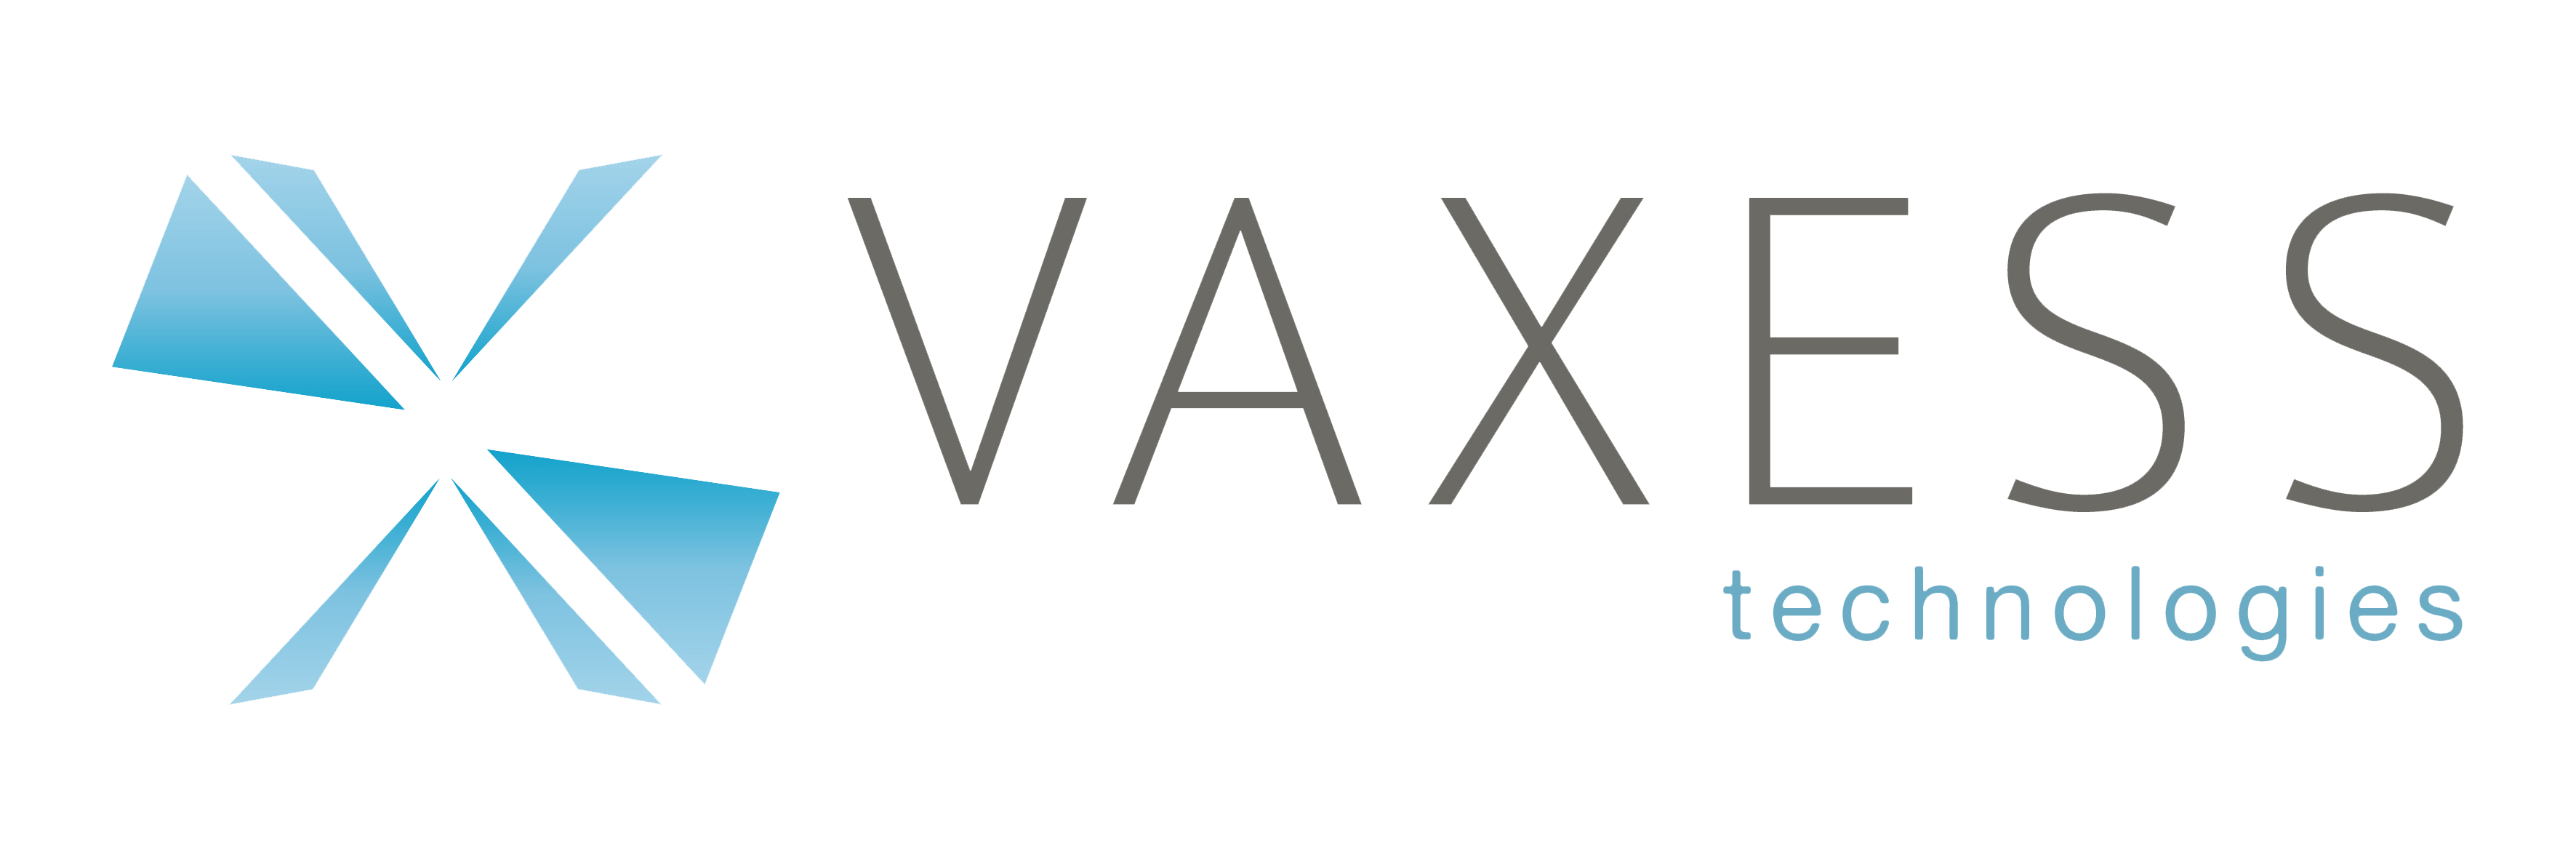 Vaxess Technologies Inc